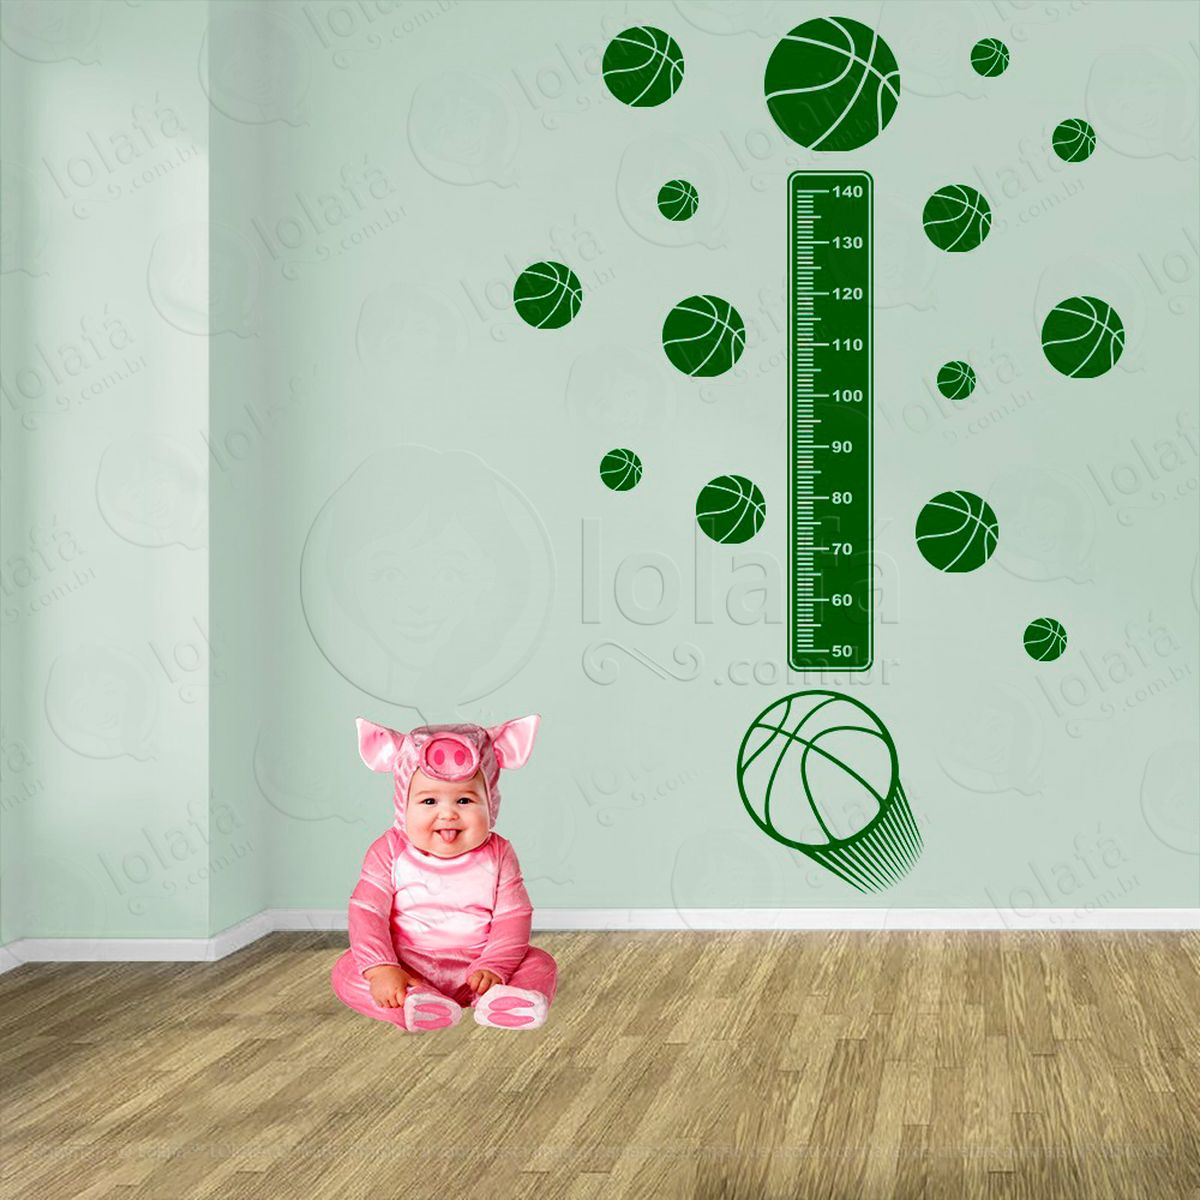 basquetebol e bolas de basquete adesivo régua de crescimento infantil, medidor de altura para quarto, porta e parede - mod:272